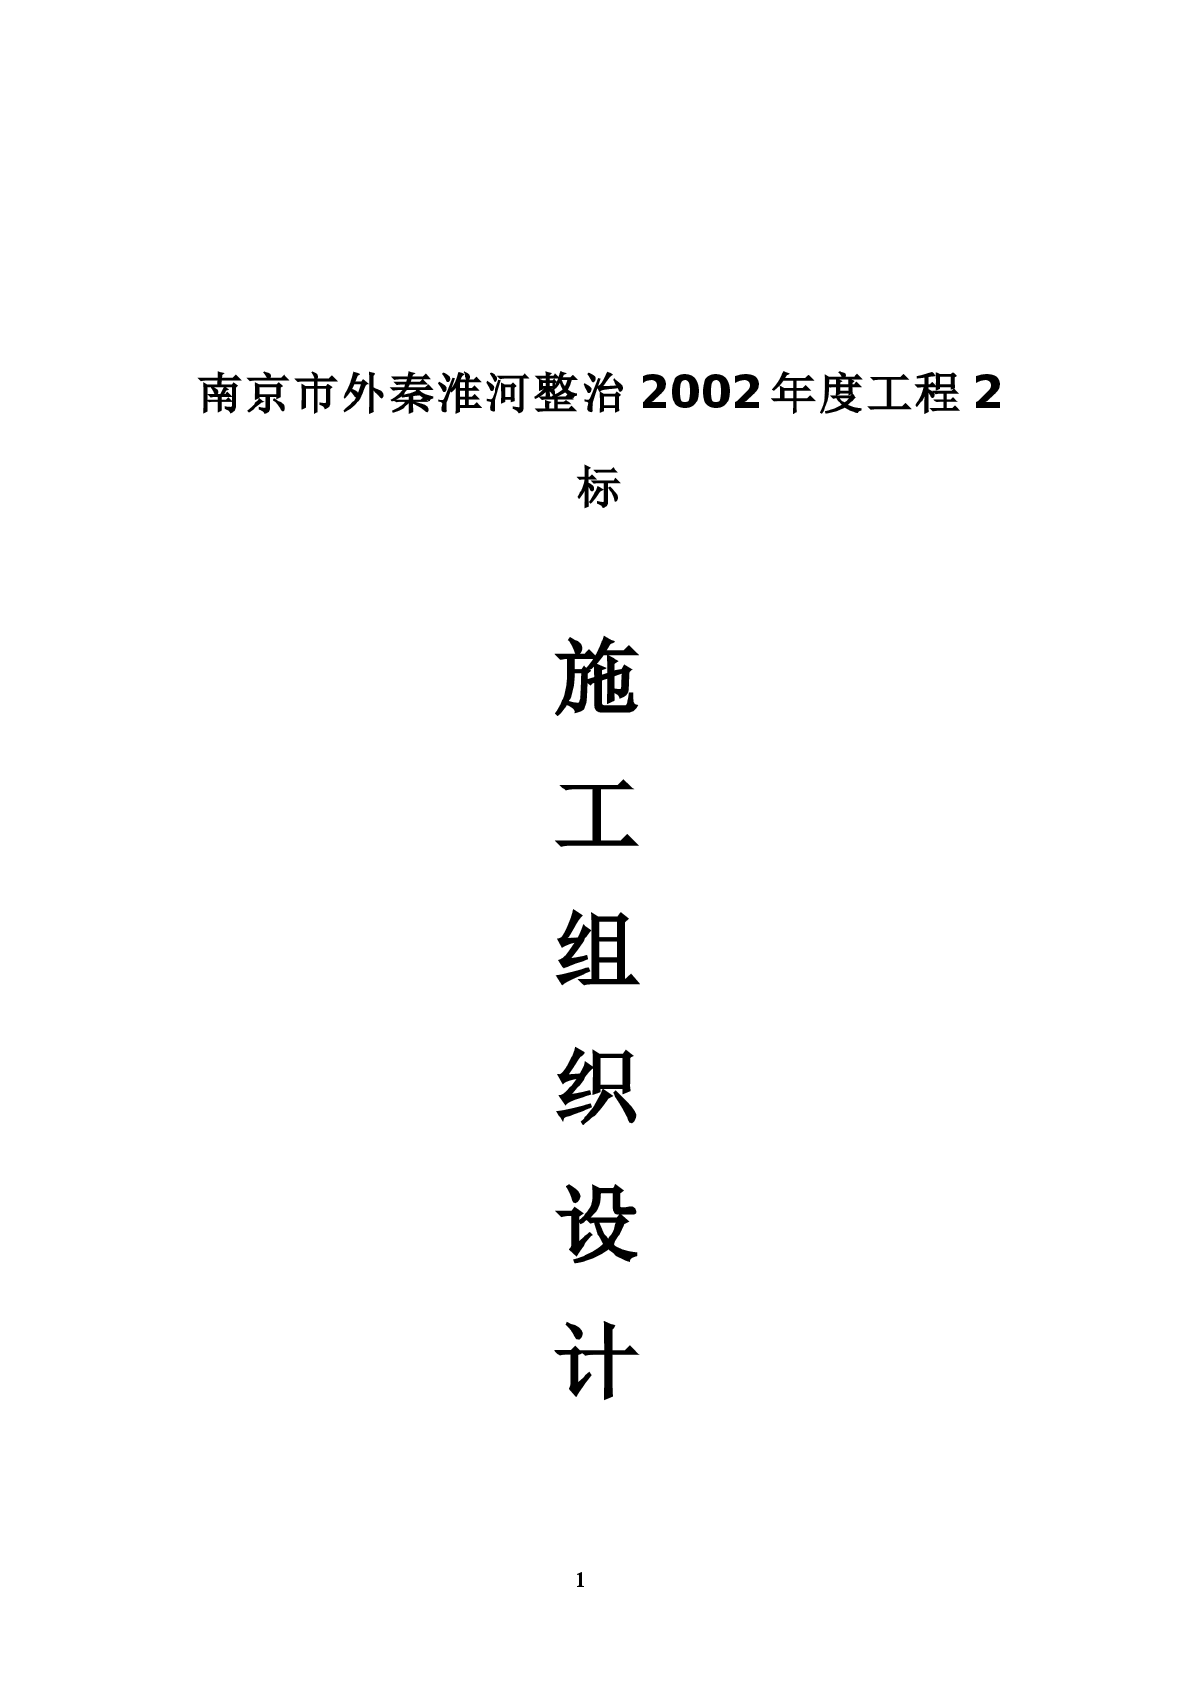 【南京】秦淮河整治施工组织设计方案